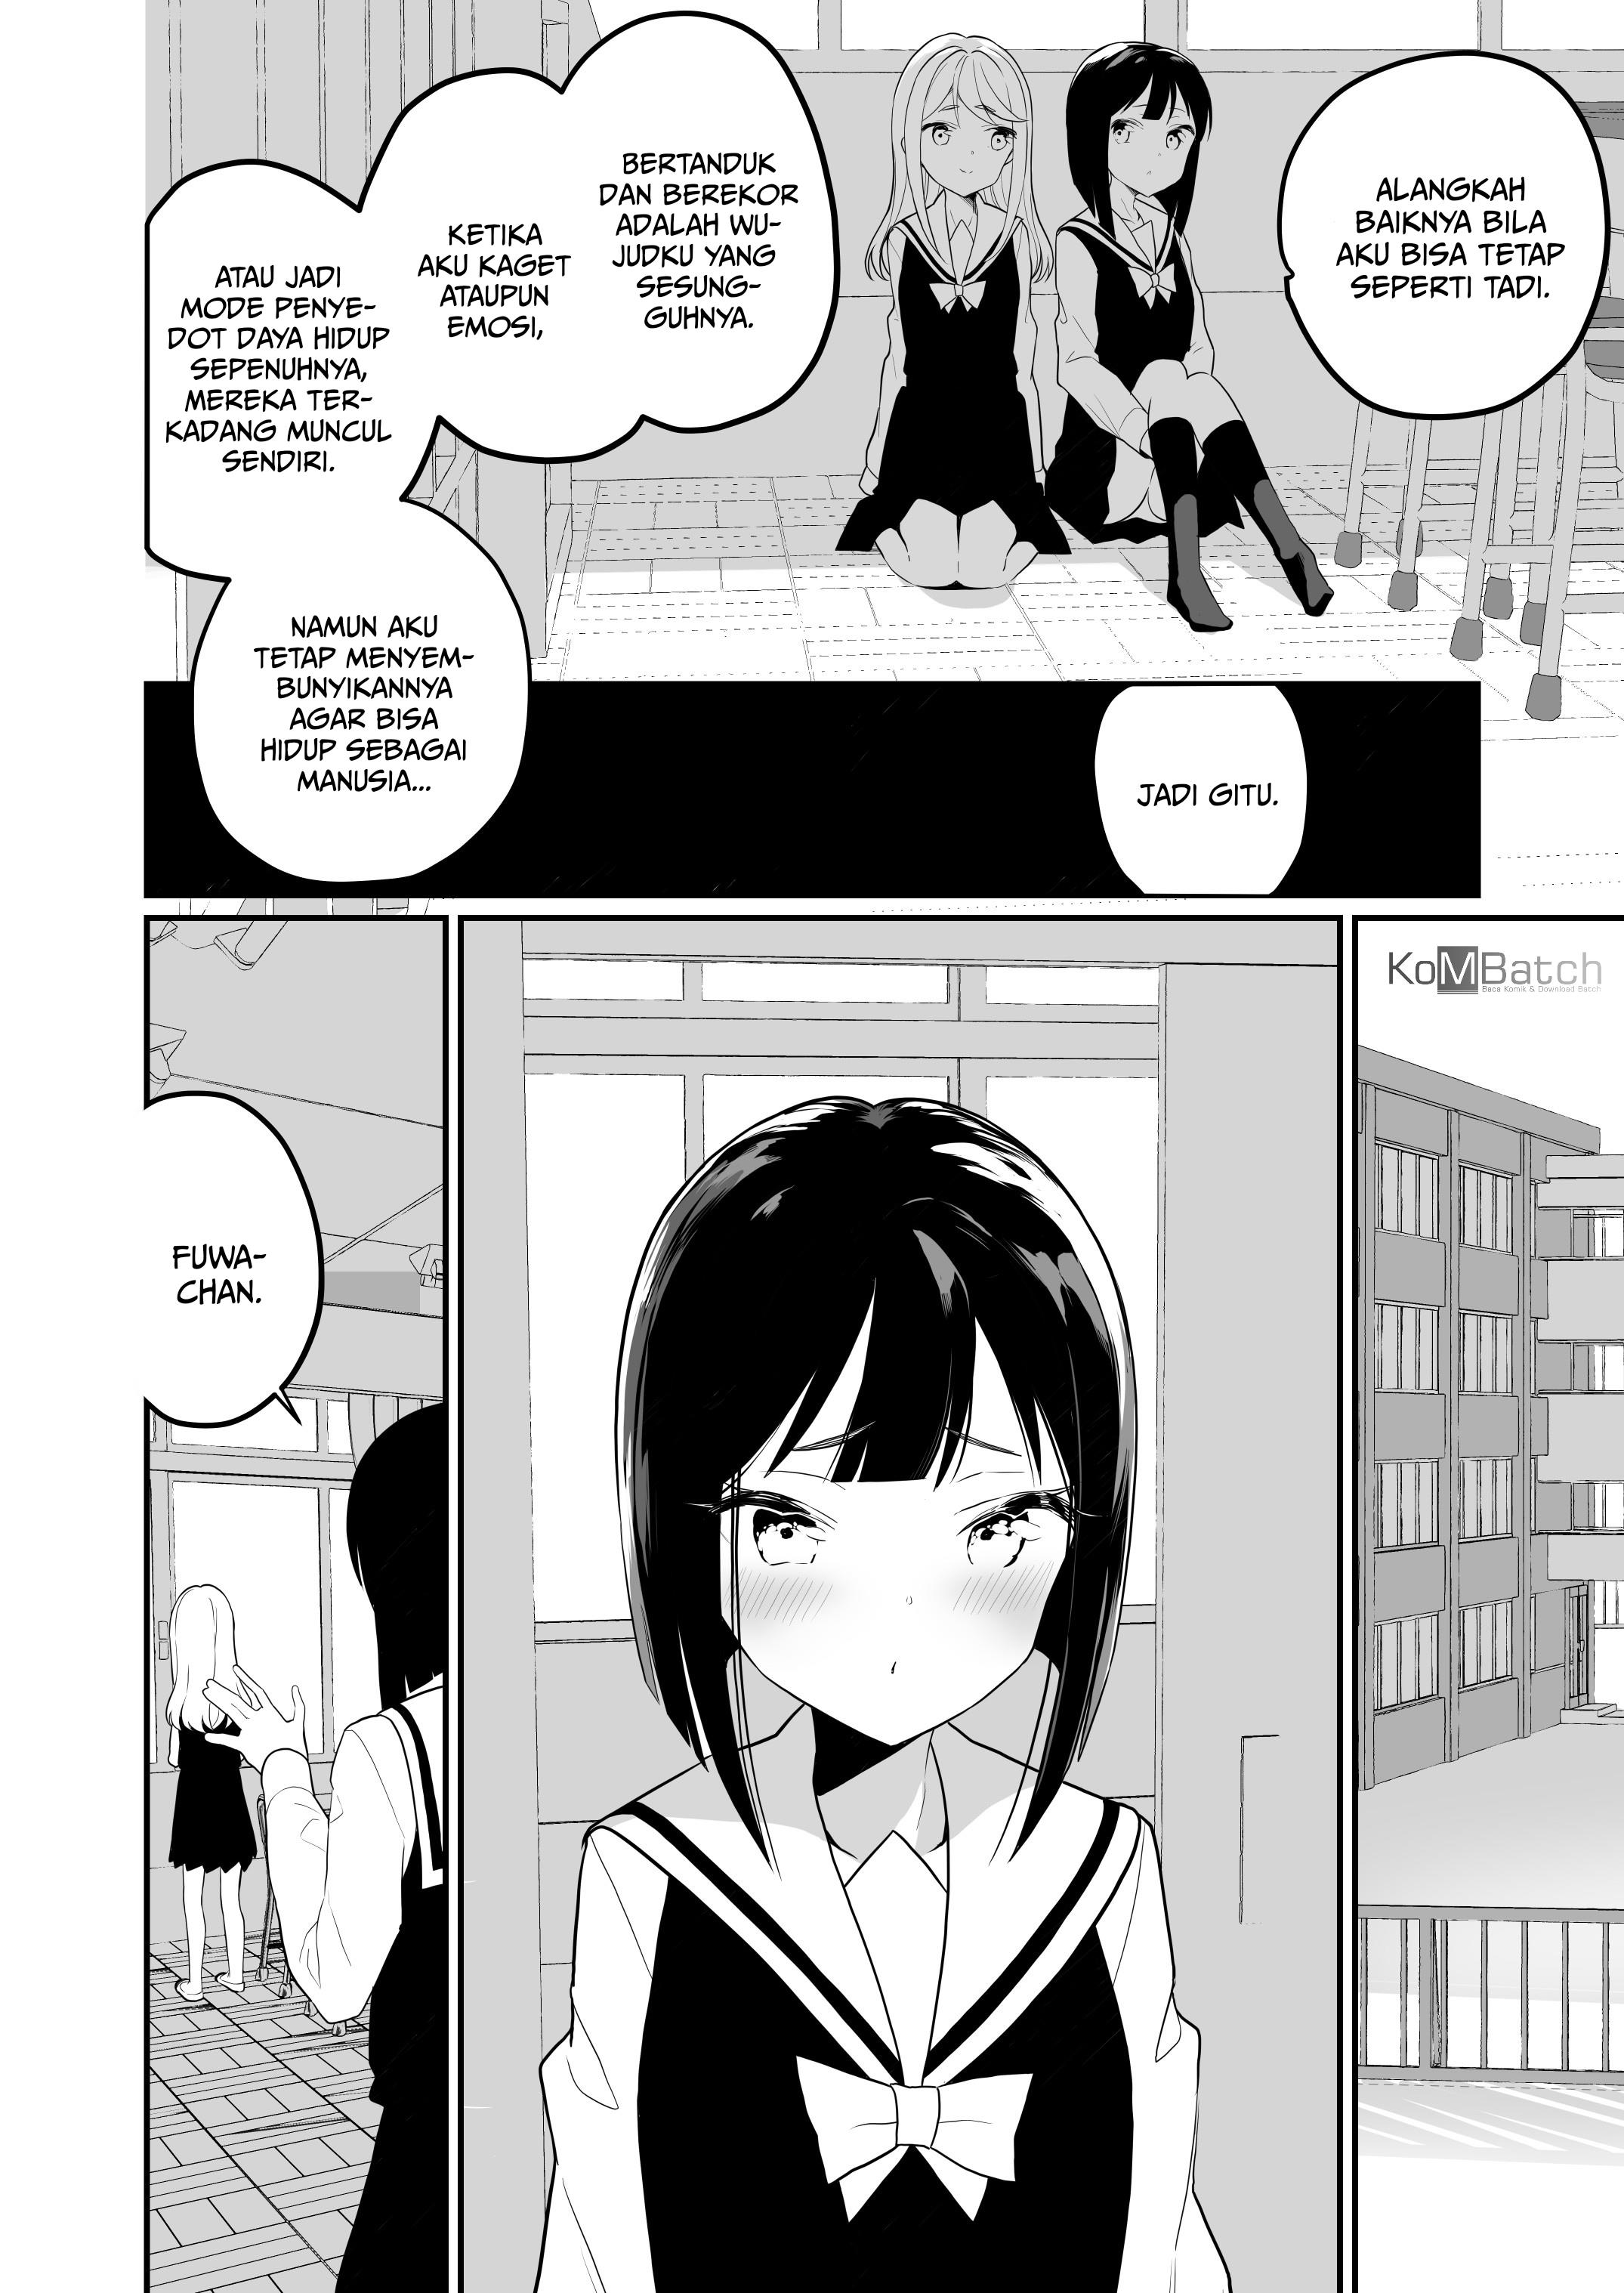 hentai yuri lesbian succubus sex manga doujin